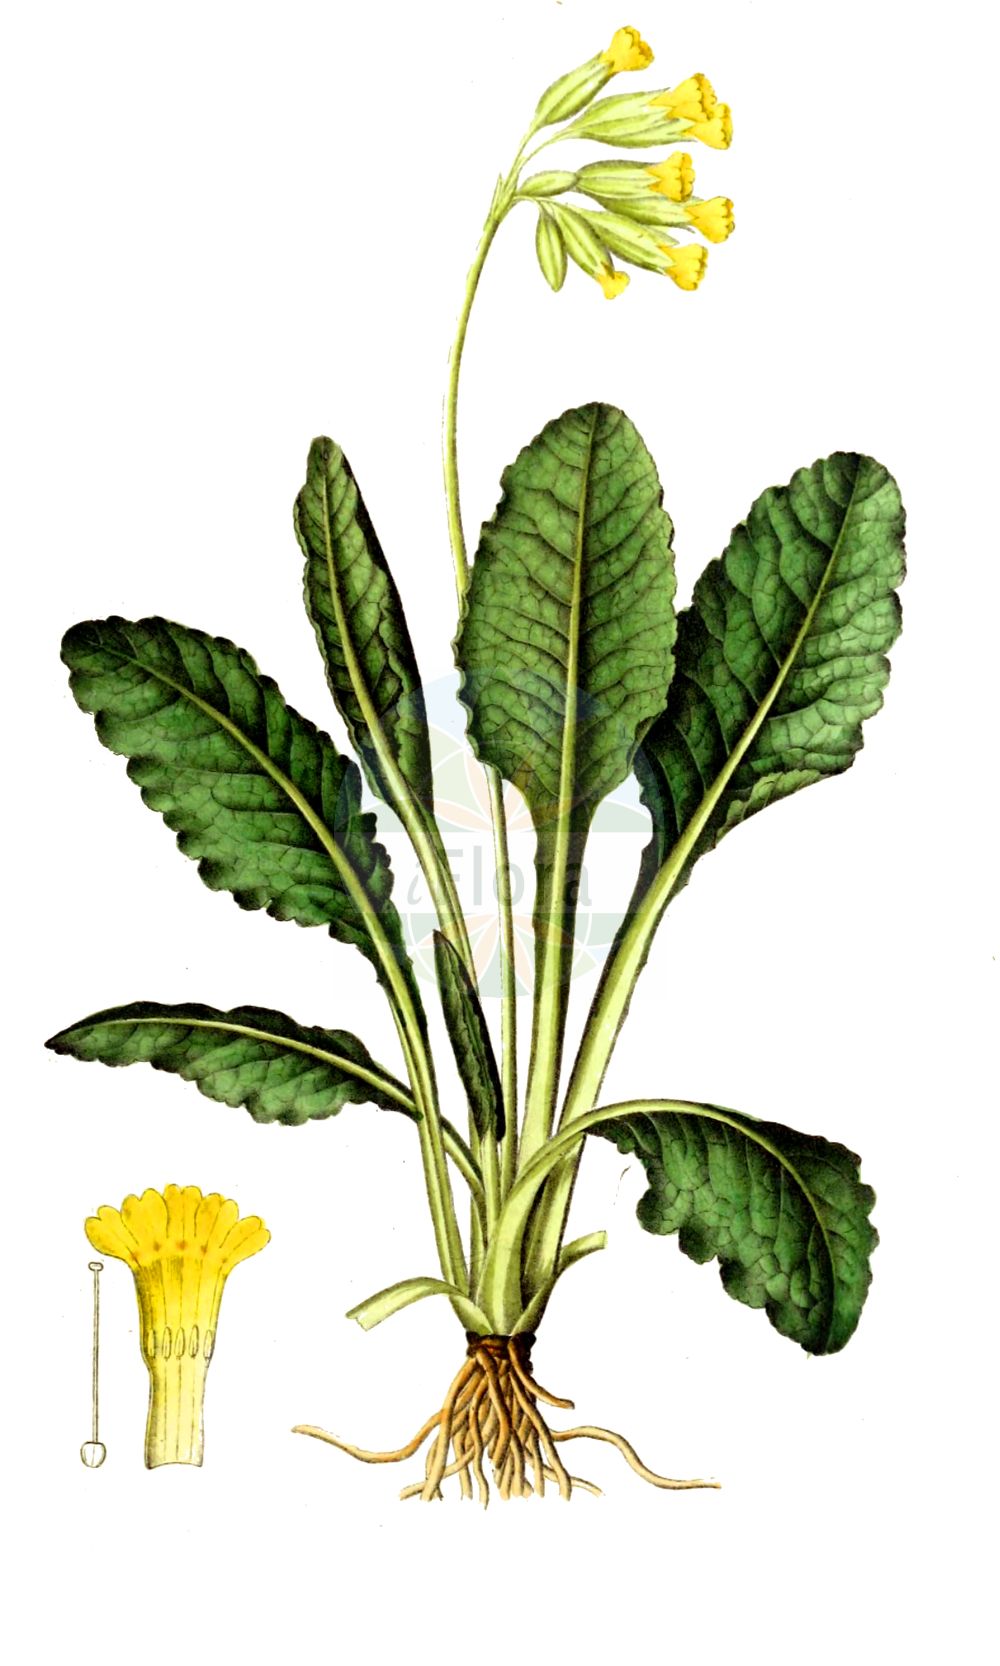 Historische Abbildung von Primula veris (Echte Schlüsselblume - Cowslip). Das Bild zeigt Blatt, Bluete, Frucht und Same. ---- Historical Drawing of Primula veris (Echte Schlüsselblume - Cowslip). The image is showing leaf, flower, fruit and seed.(Primula veris,Echte Schlüsselblume,Cowslip,Primula officinalis,Primula veris,Primula veris var. officinalis,Echte Schluesselblume,Duftende Schluesselblume,Echte Primel,Erd-Primel,Fruehlings-Schluesselblume,Gewoehnliche Wiesen-Schluesselblume,Himmelschluessel,Wiesen-Primel,Wiesen-Schluesselblume,Cowslip,Cowslip Primrose,Primula,Schlüsselblume,Primrose,Primulaceae,Schlüsselblumengewächse,Primrose family,Blatt,Bluete,Frucht,Same,leaf,flower,fruit,seed,Dietrich (1833-1844))